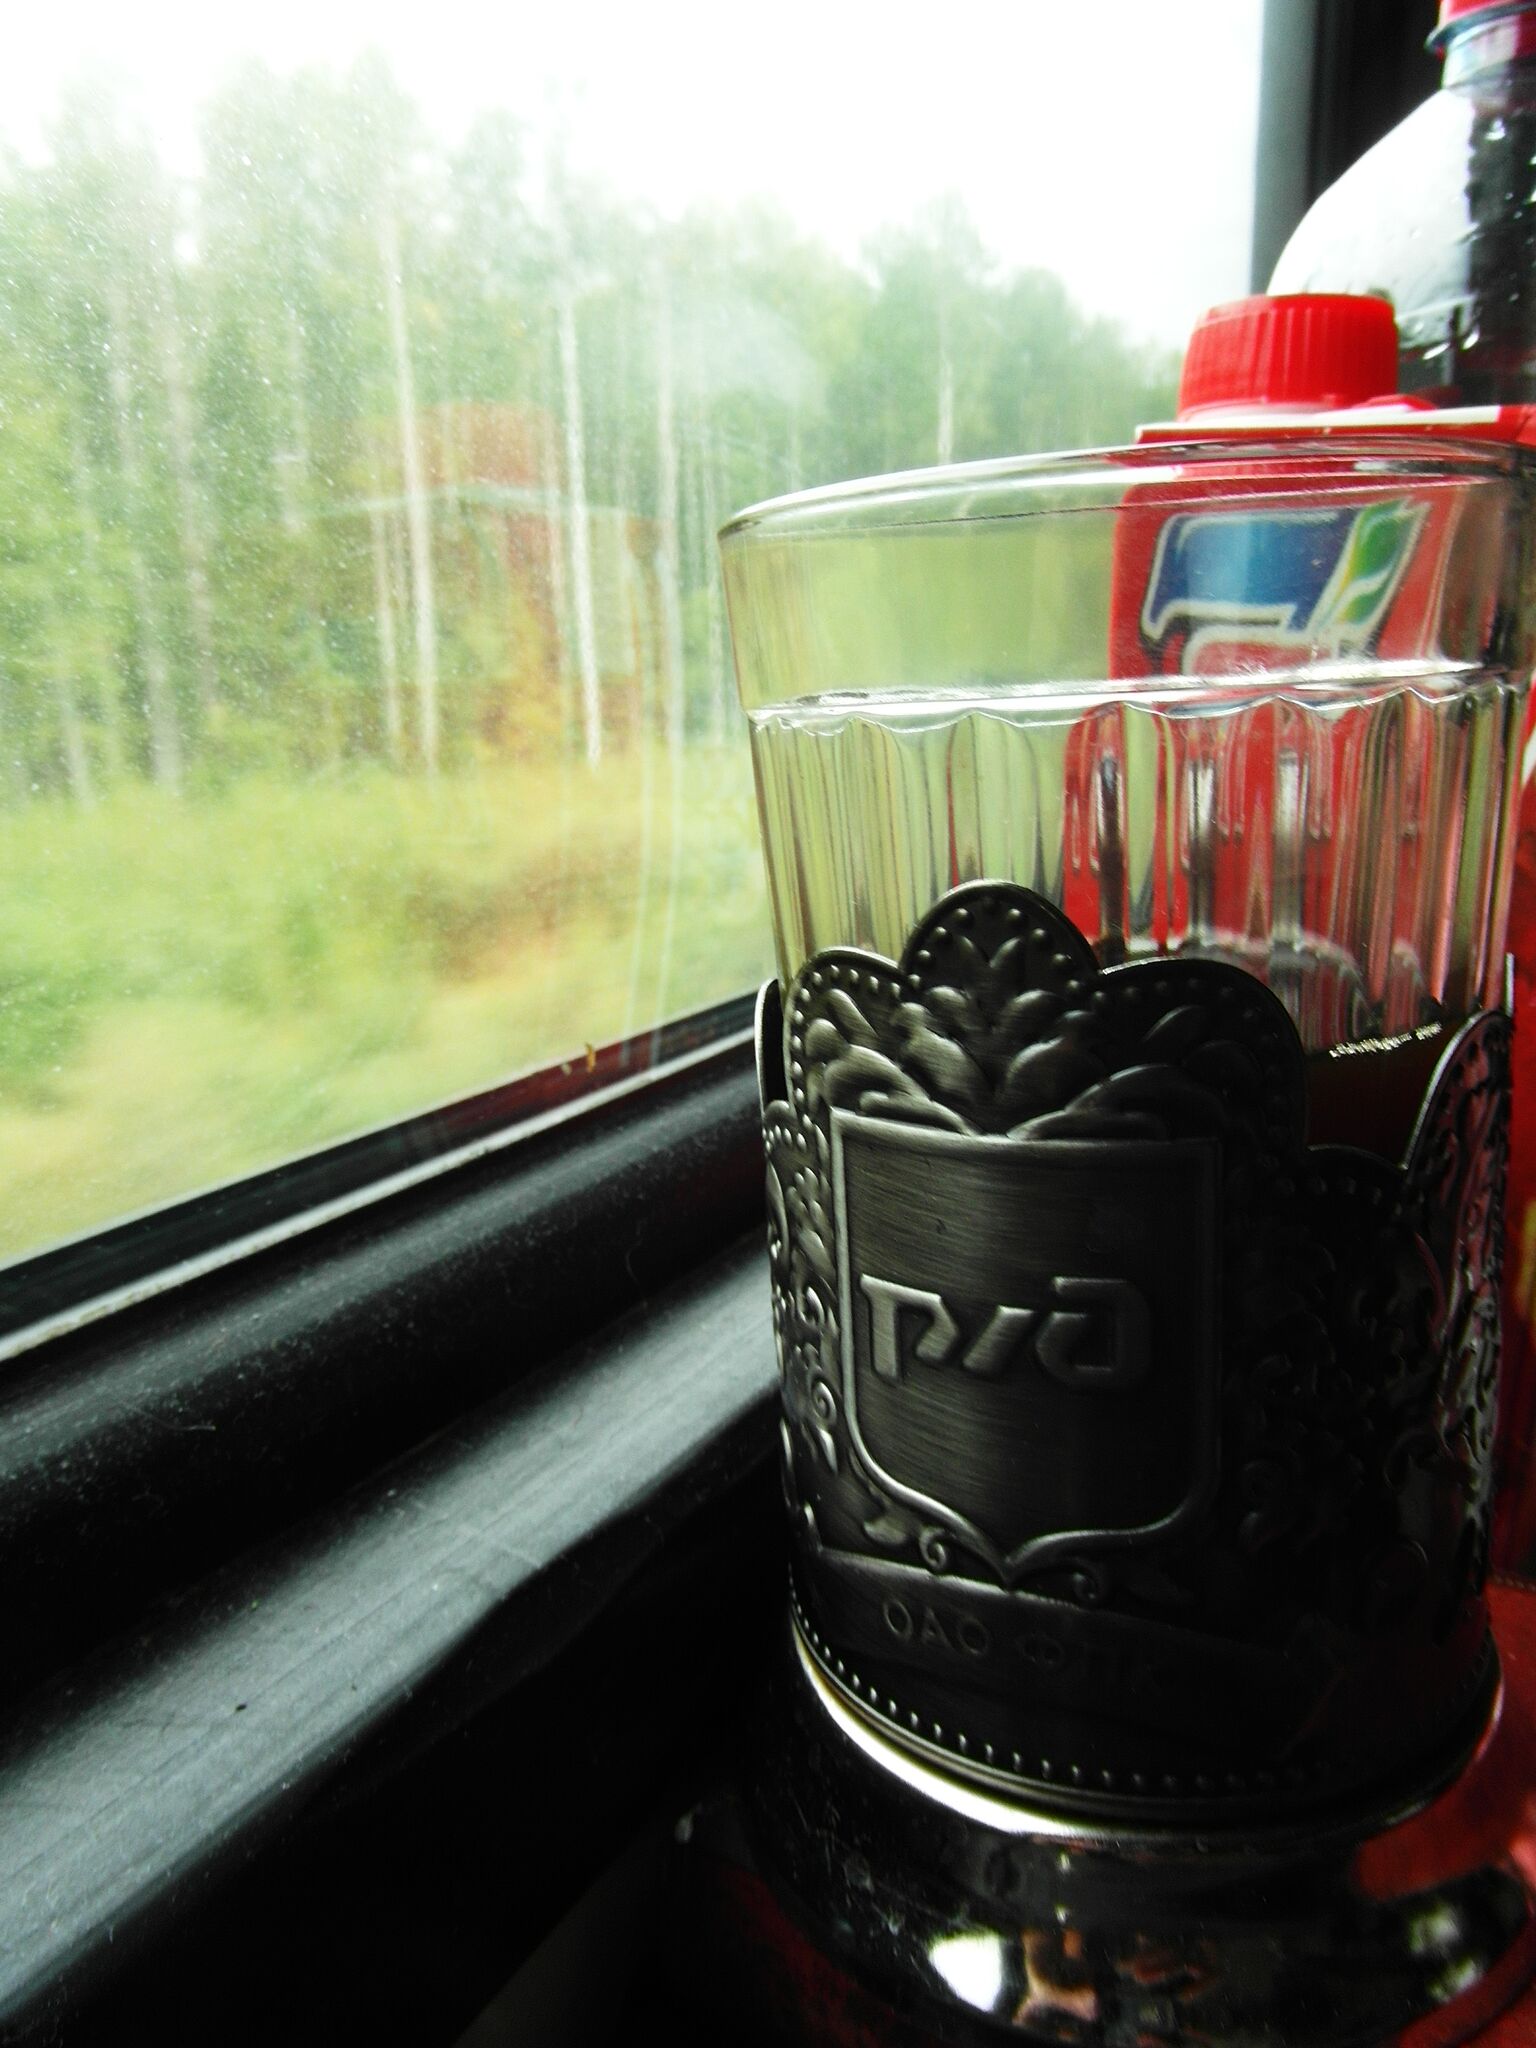 Xícaras de chá tradicionais são ótimas para viajar, e também como souvenir (Foto: Peggy Lohse)